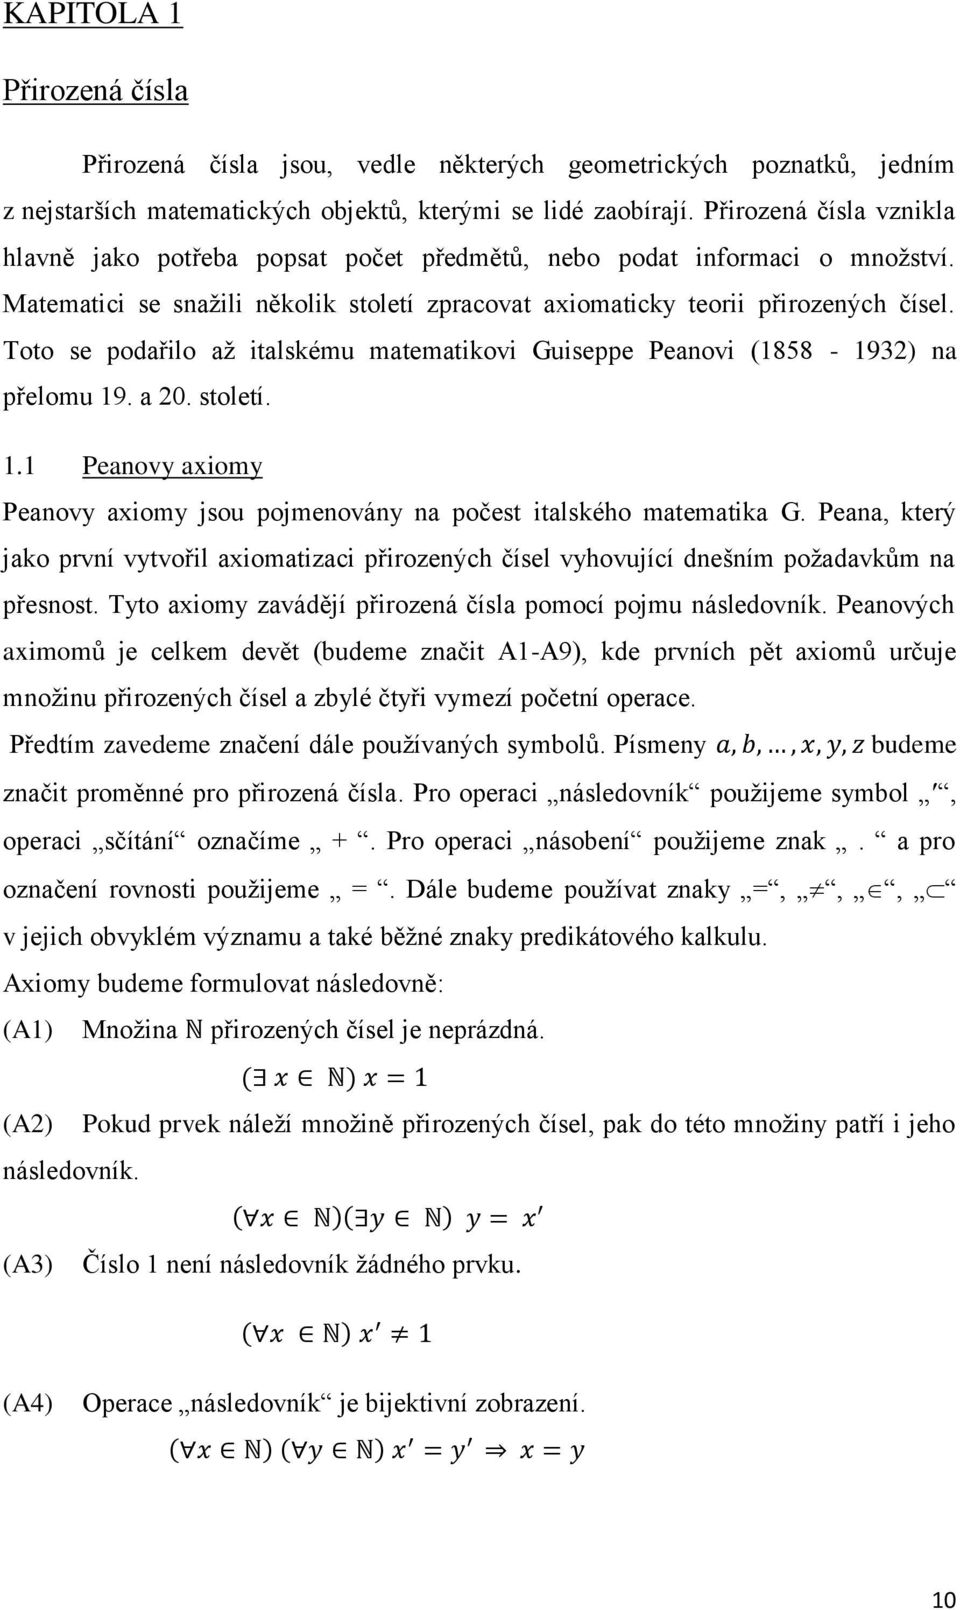 Toto se podařilo až italskému matematikovi Guiseppe Peanovi (1858-1932) na přelomu 19. a 20. století. 1.1 Peanovy axiomy Peanovy axiomy jsou pojmenovány na počest italského matematika G.